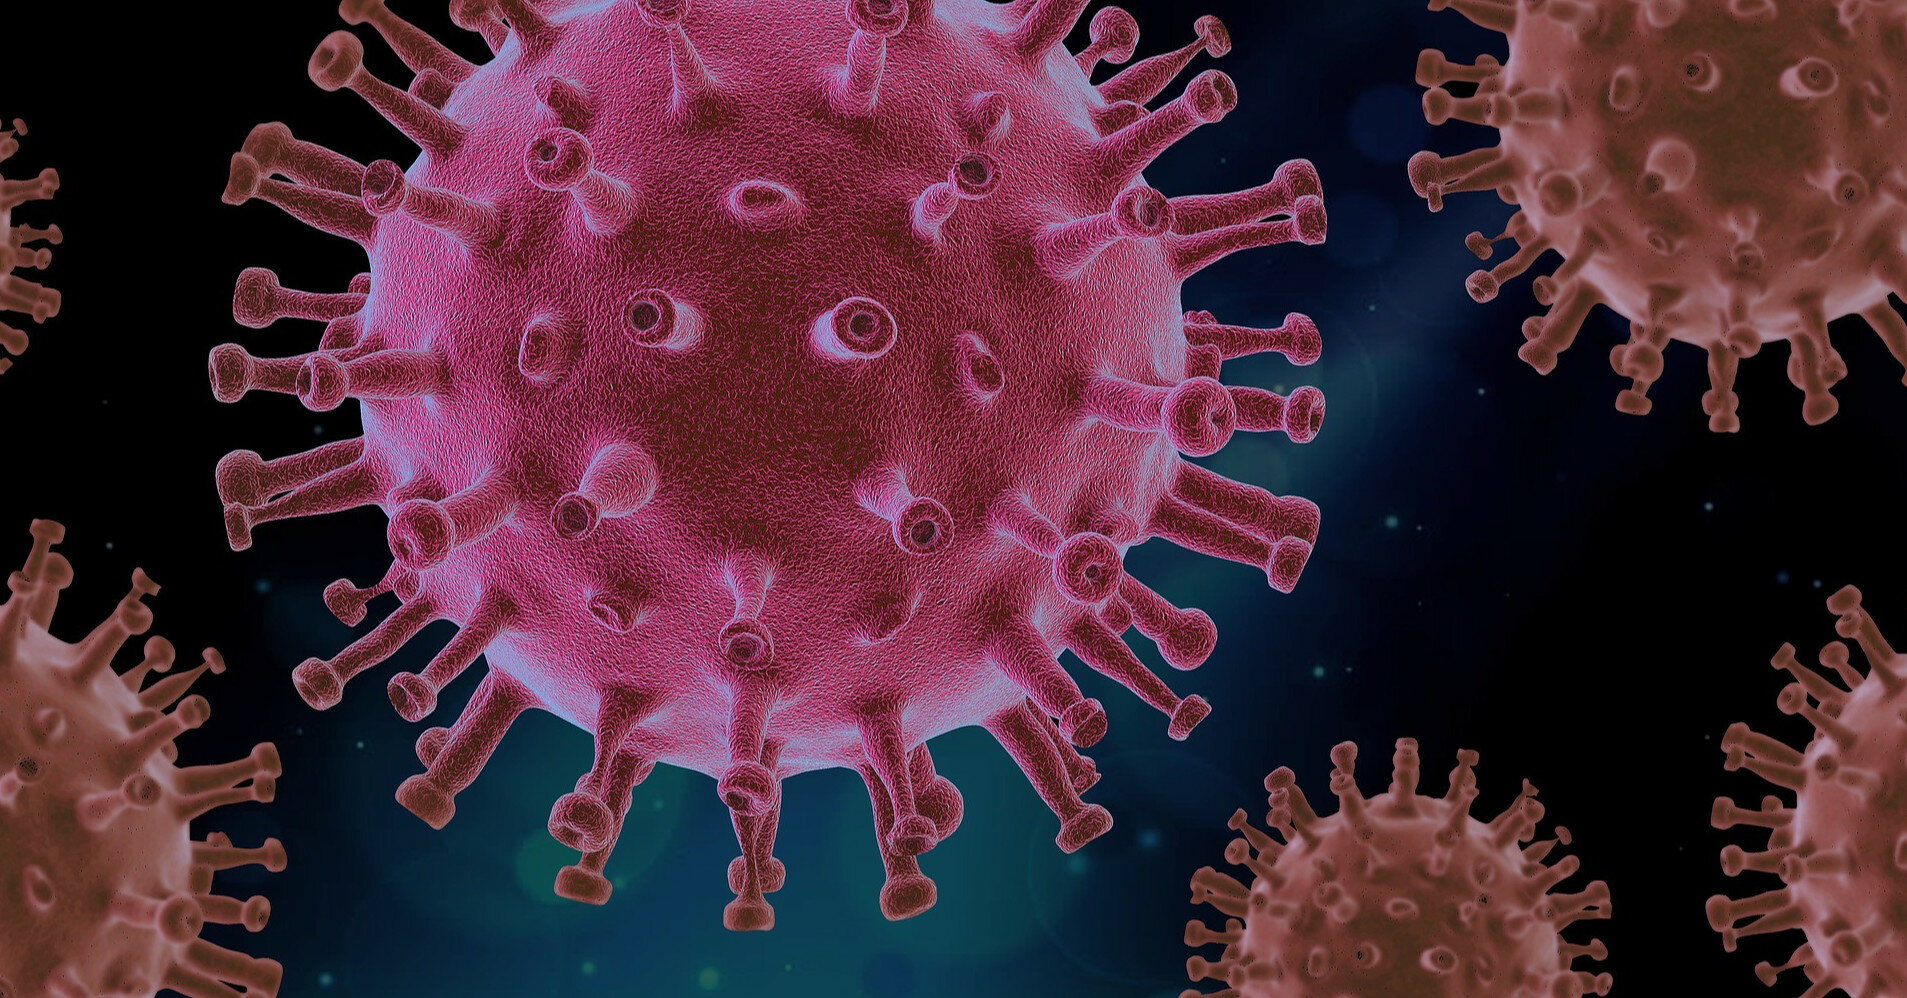 Ученые изобрели наноловушки для борьбы с вирусами